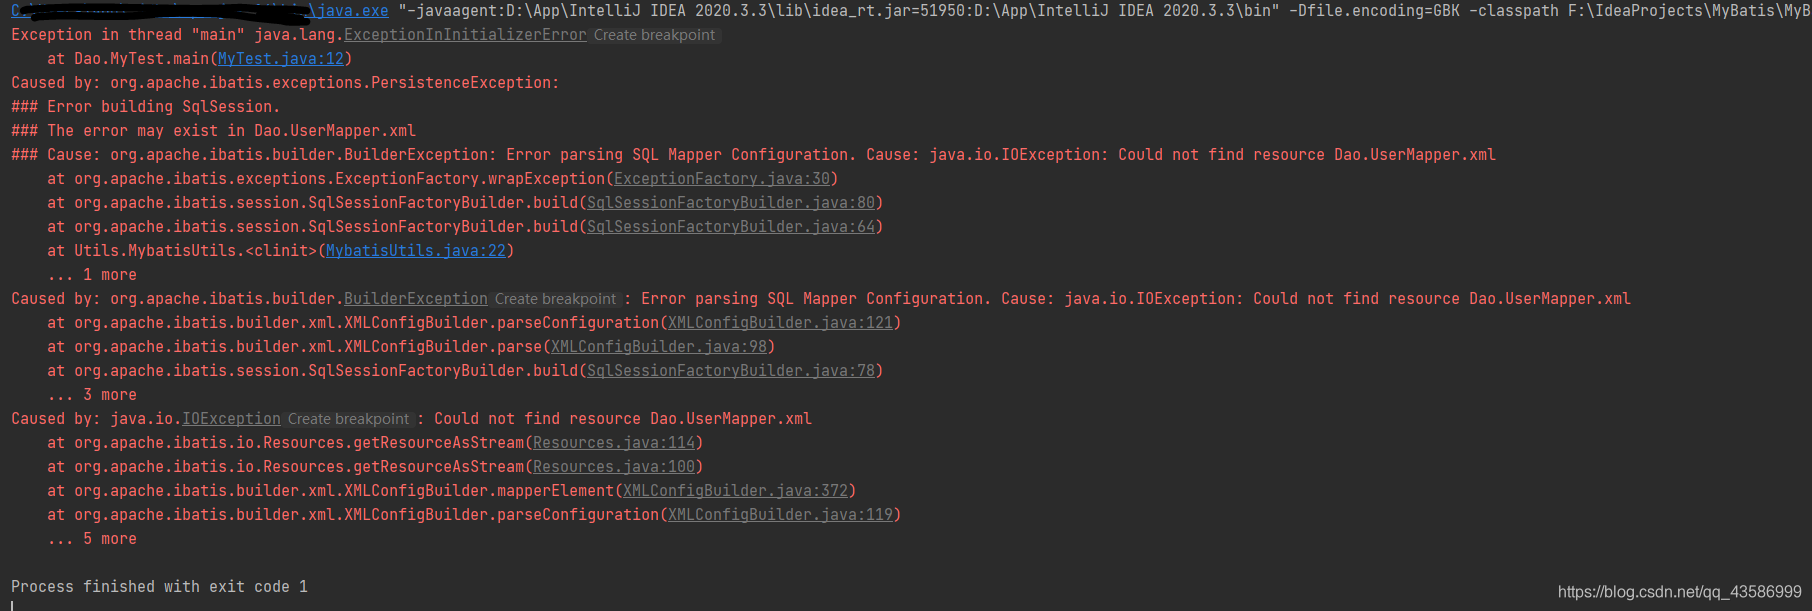 **报 Cause: org.apache.ibatis.builder.BuilderException: Error parsing SQL Mapper Configuration. Cause: java.io.IOException: Could not find resource Dao.UserMapper.xml的错误**